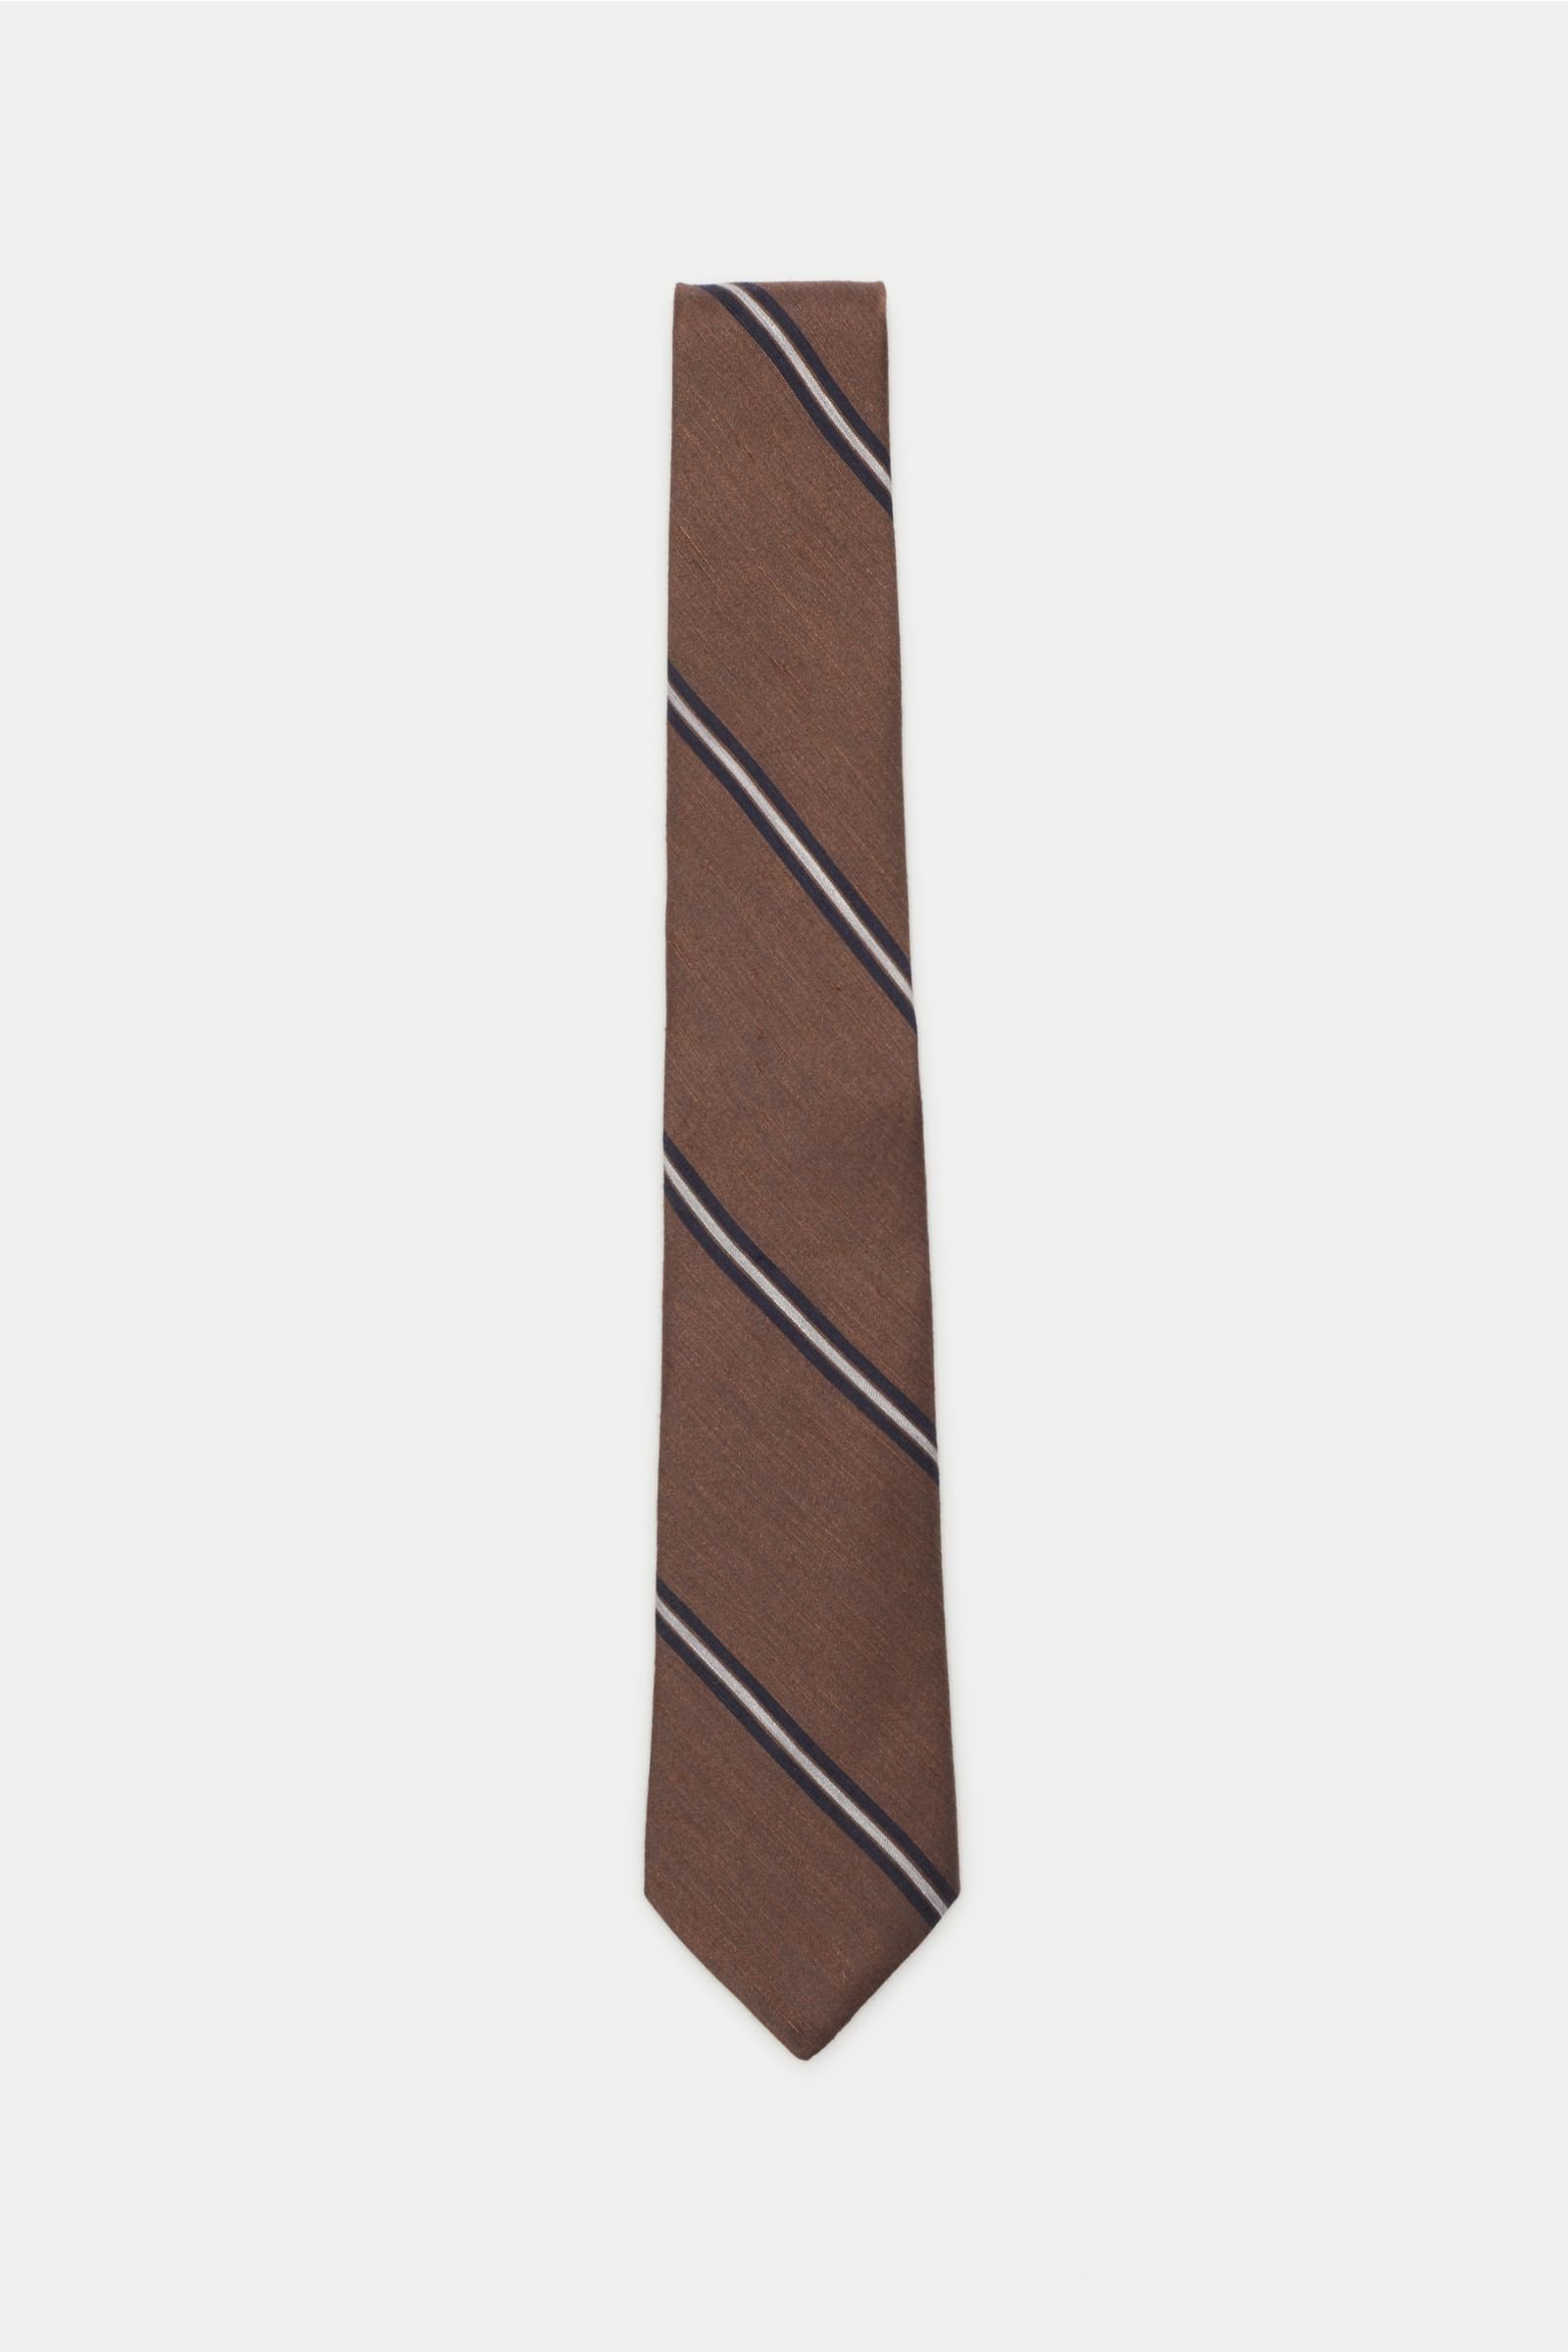 Krawatte dunkelbraun/navy gestreift